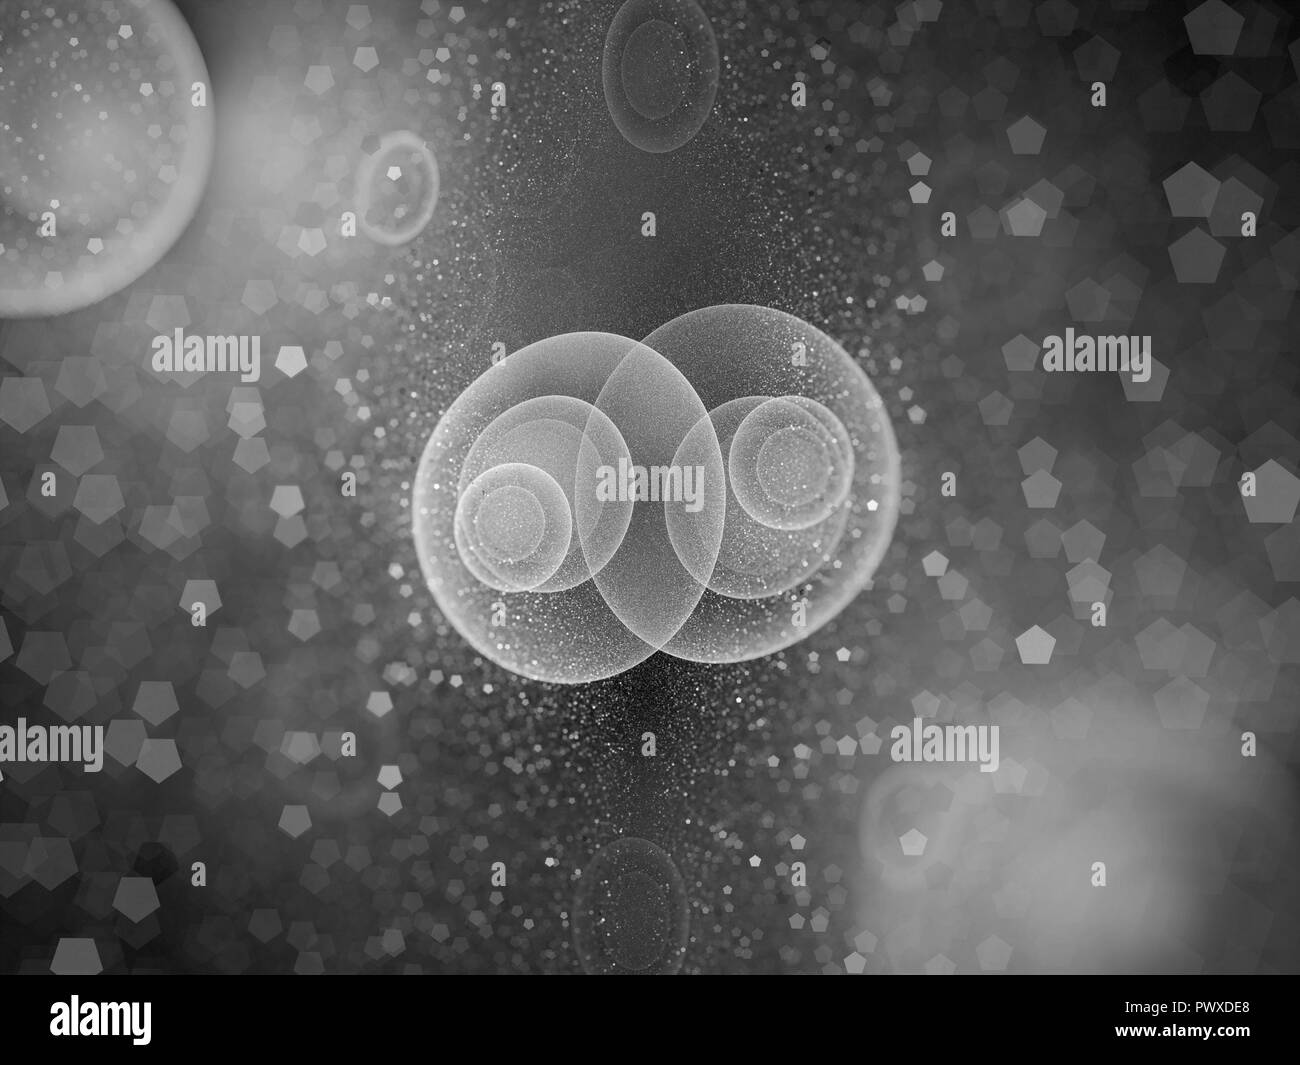 Mitosis celular resplandeciente fractal generado por ordenador, fondo abstracto, blanco y negro, 3D rendering Foto de stock